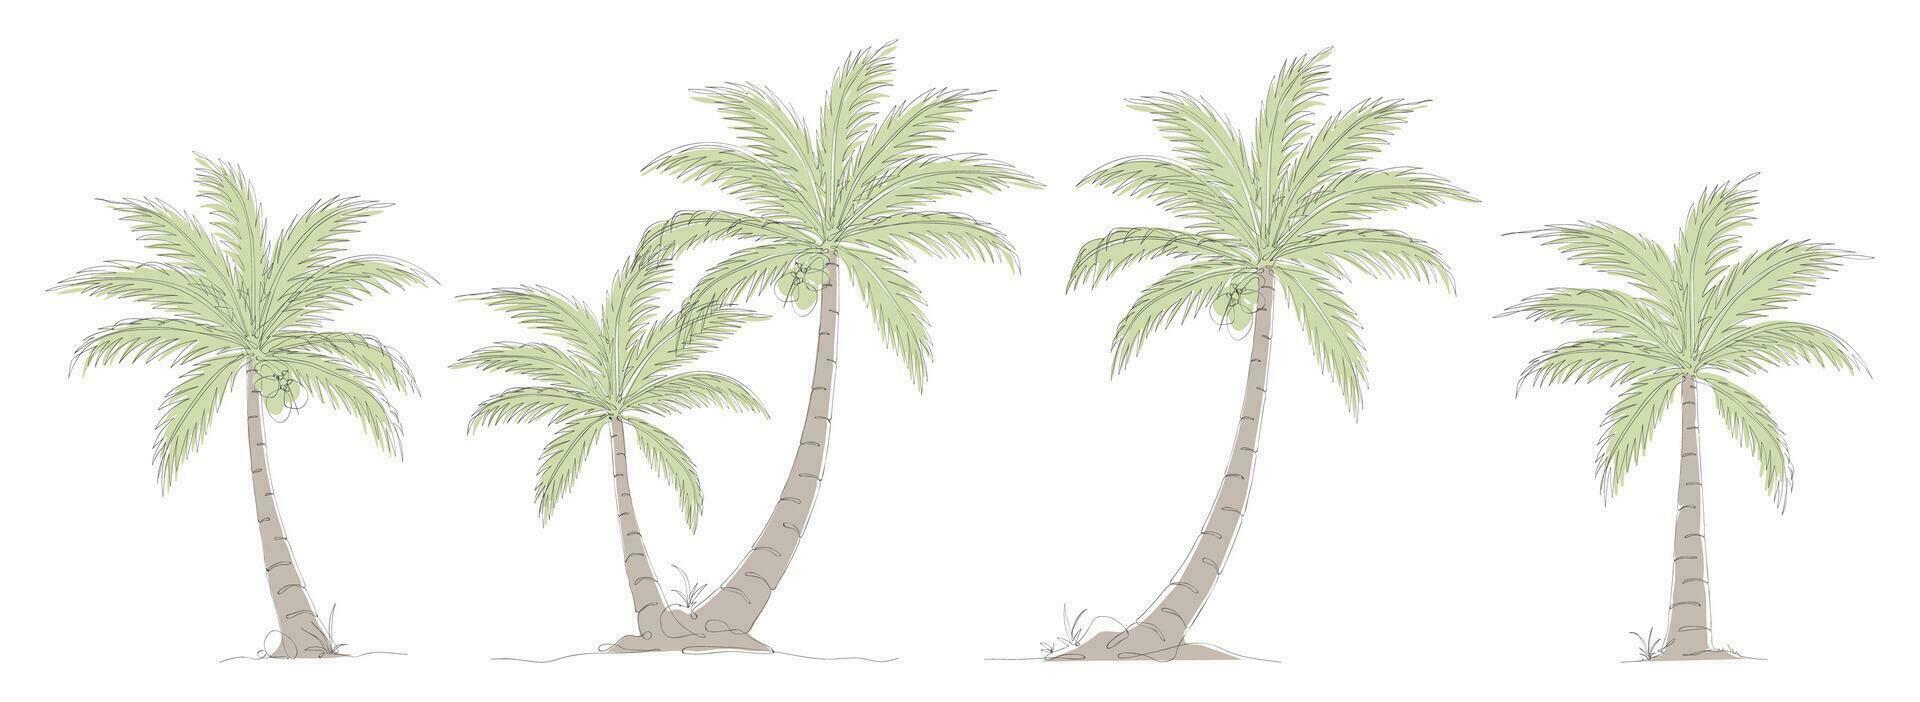 kokos träd linje konst teckning samling. enda kontinuerlig linje teckning av kokos handflatan träd uppsättning. uppsättning av dekorativ kokos handflatan träd begrepp. kokos träd modern ett linje teckning vektor illustration